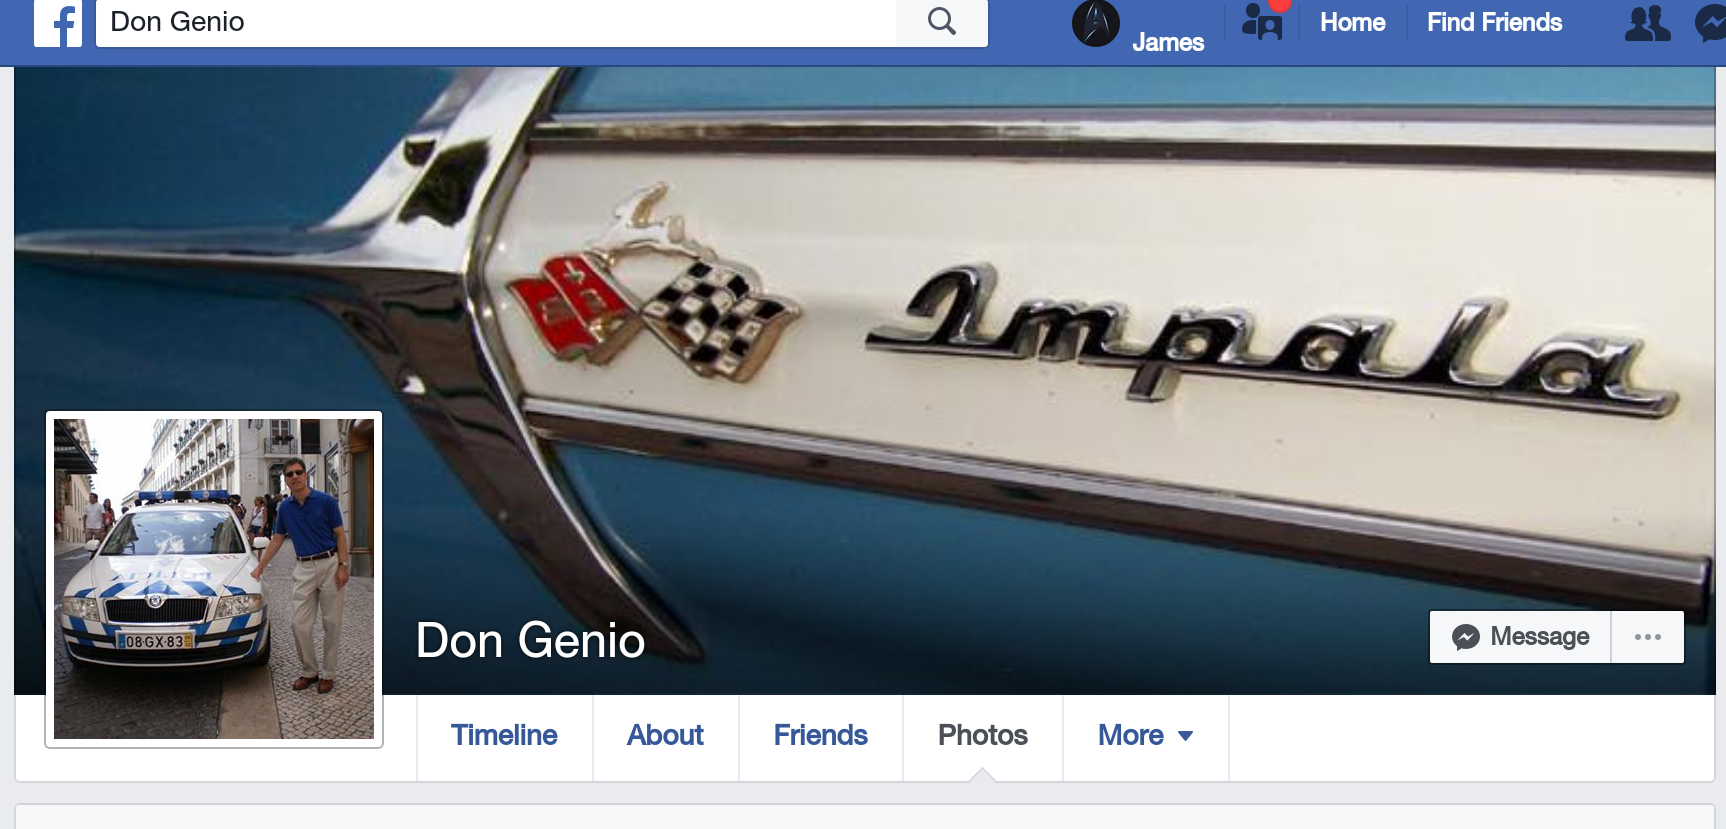 Don Genio's current Facebook profile